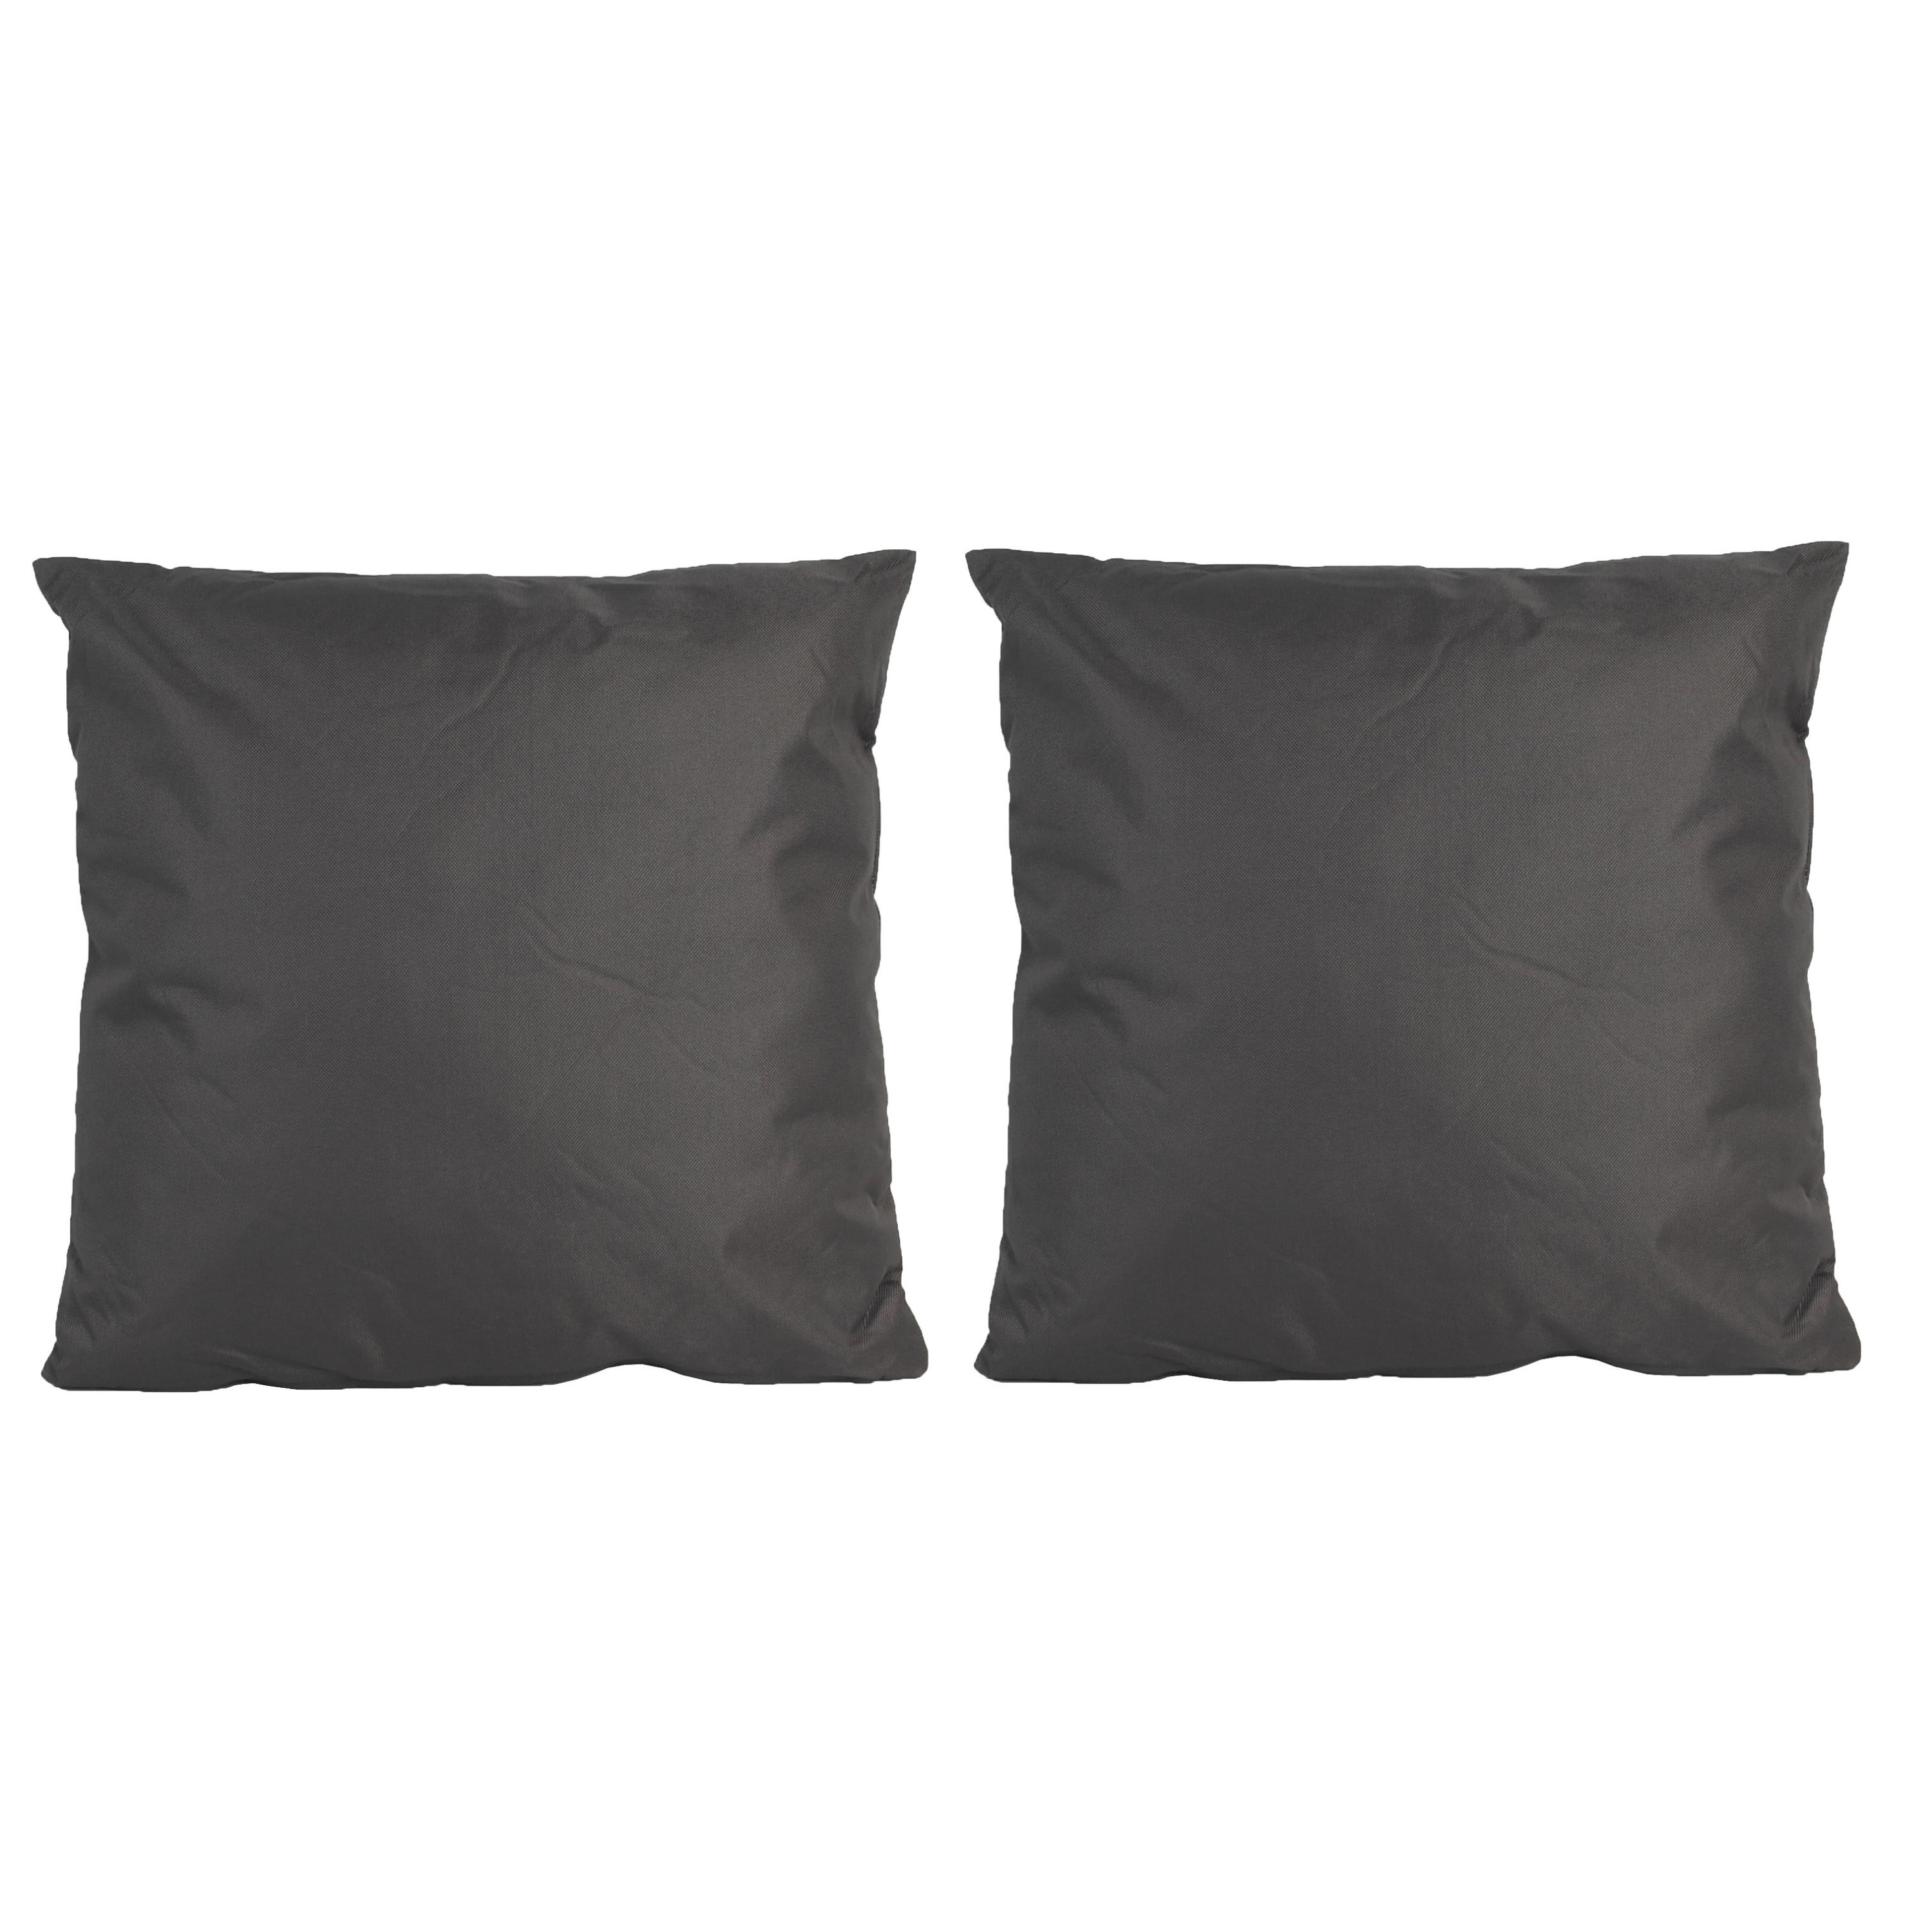 2x Grote bank-sier kussens voor binnen en buiten in de kleur antraciet grijs 60 x 60 cm